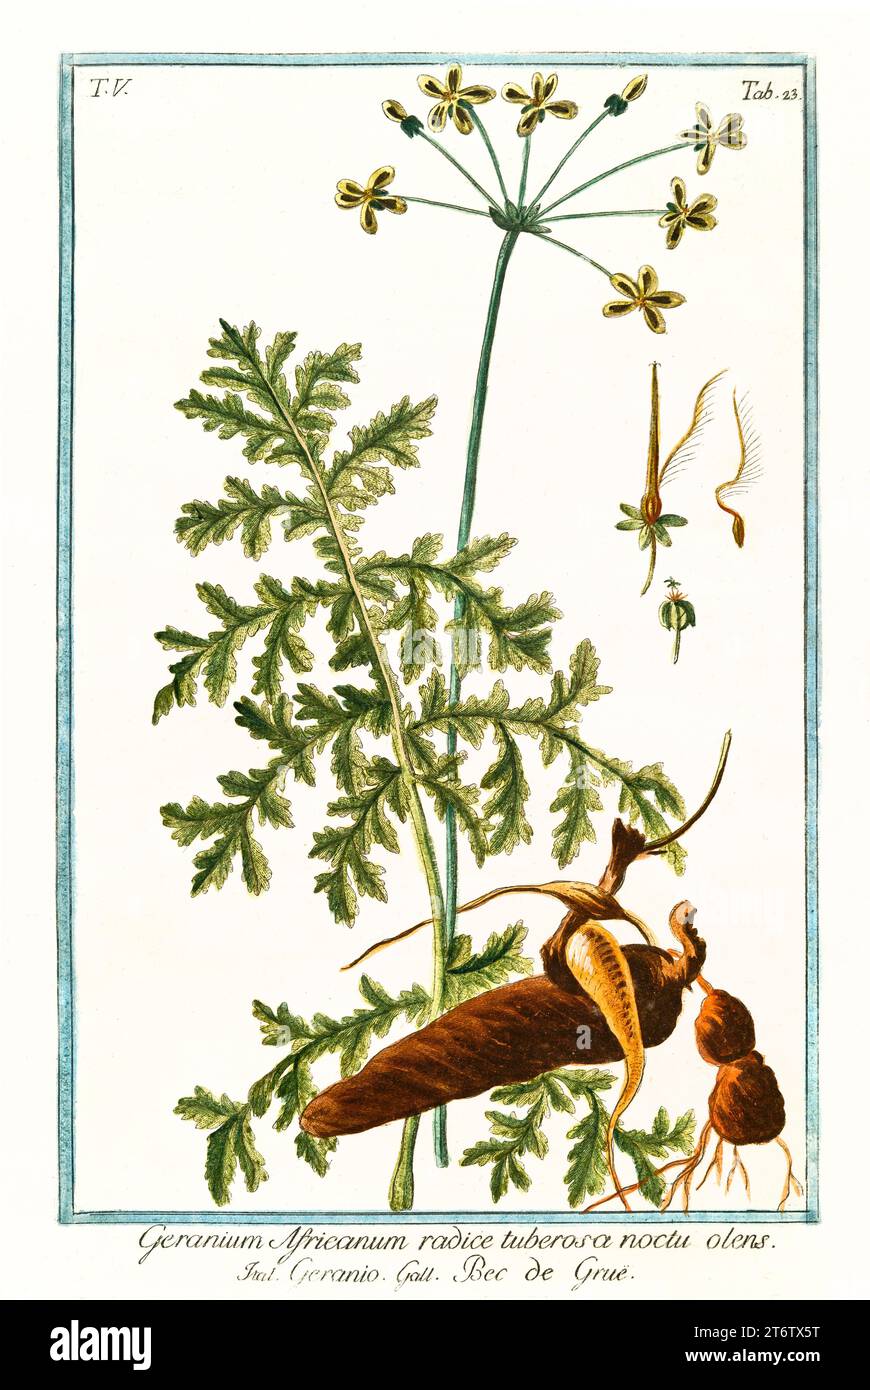 Old illustration of  Redstem Filaree (Erodium cicutarium). By G. Bonelli on Hortus Romanus, publ. N. Martelli, Rome, 1772 – 93 Stock Photo